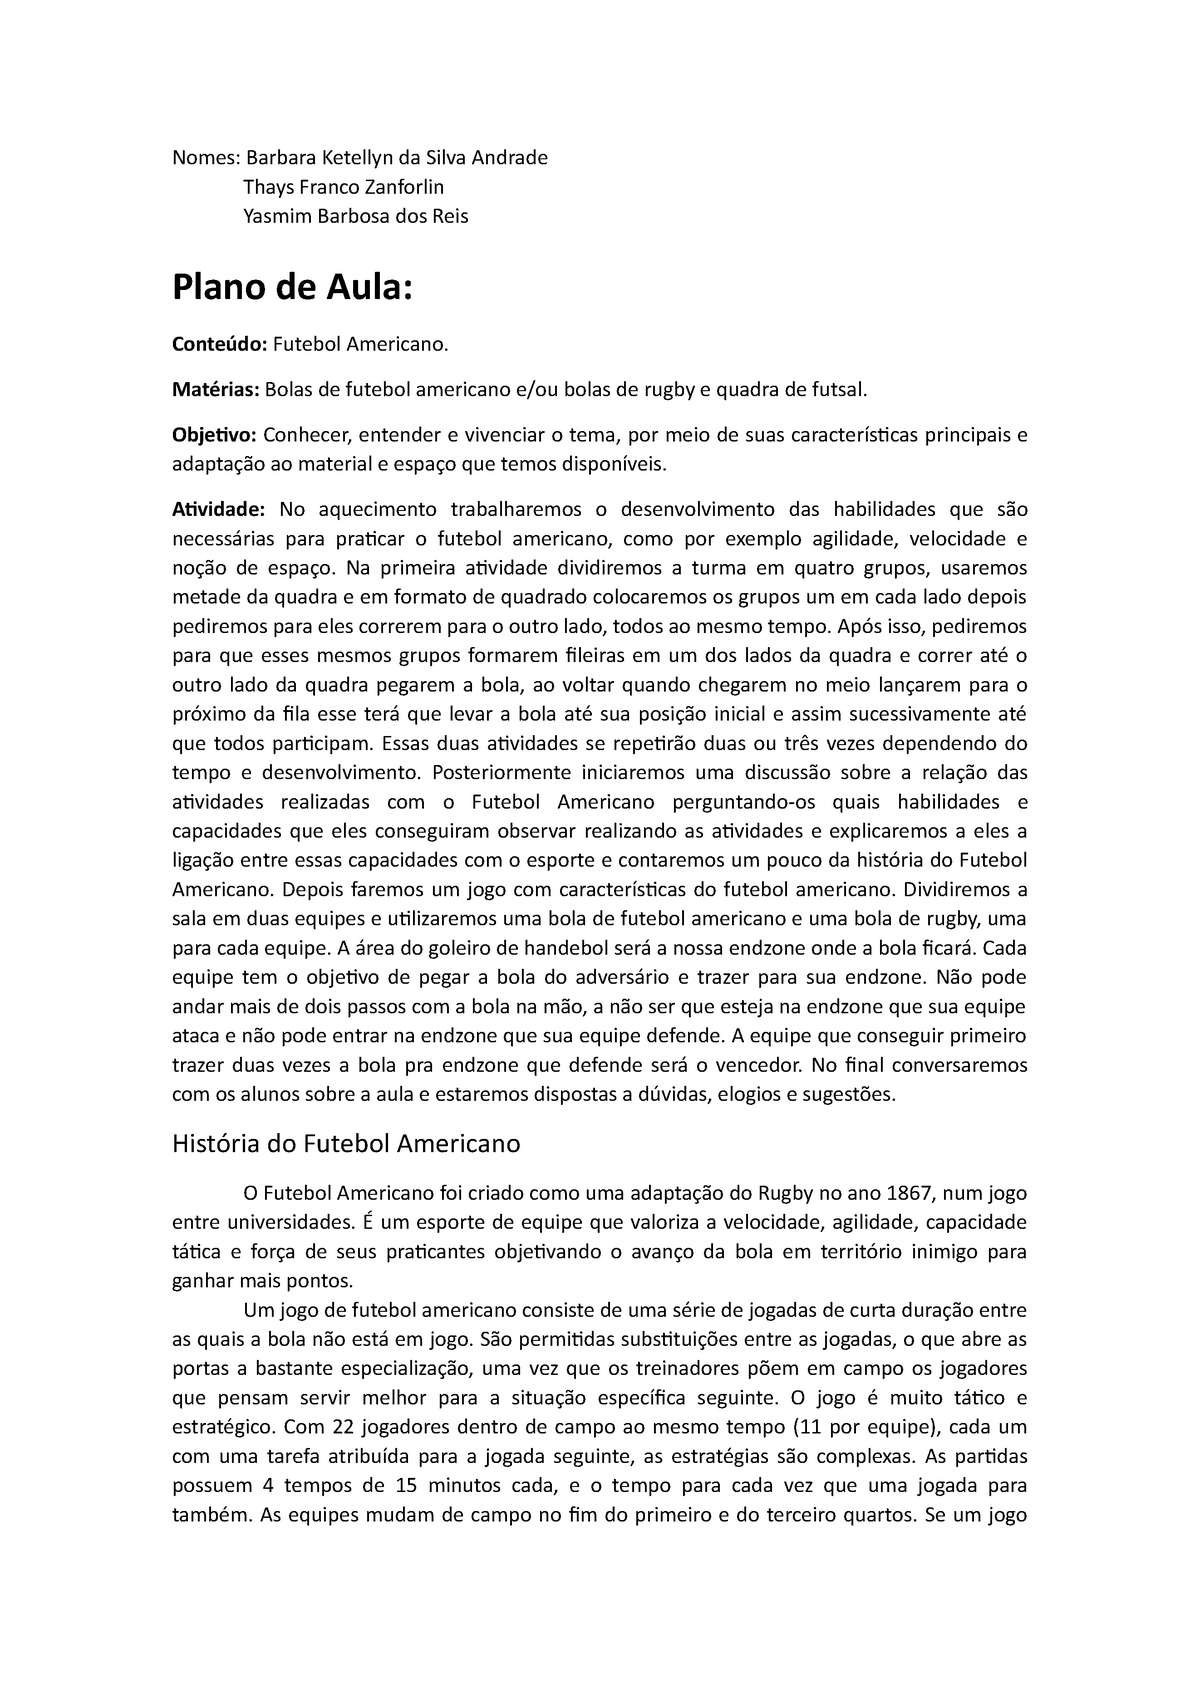 Futebol Americano - fundamentos e estrutura com as regras - Educação  Ambiental - UNISA - Studocu